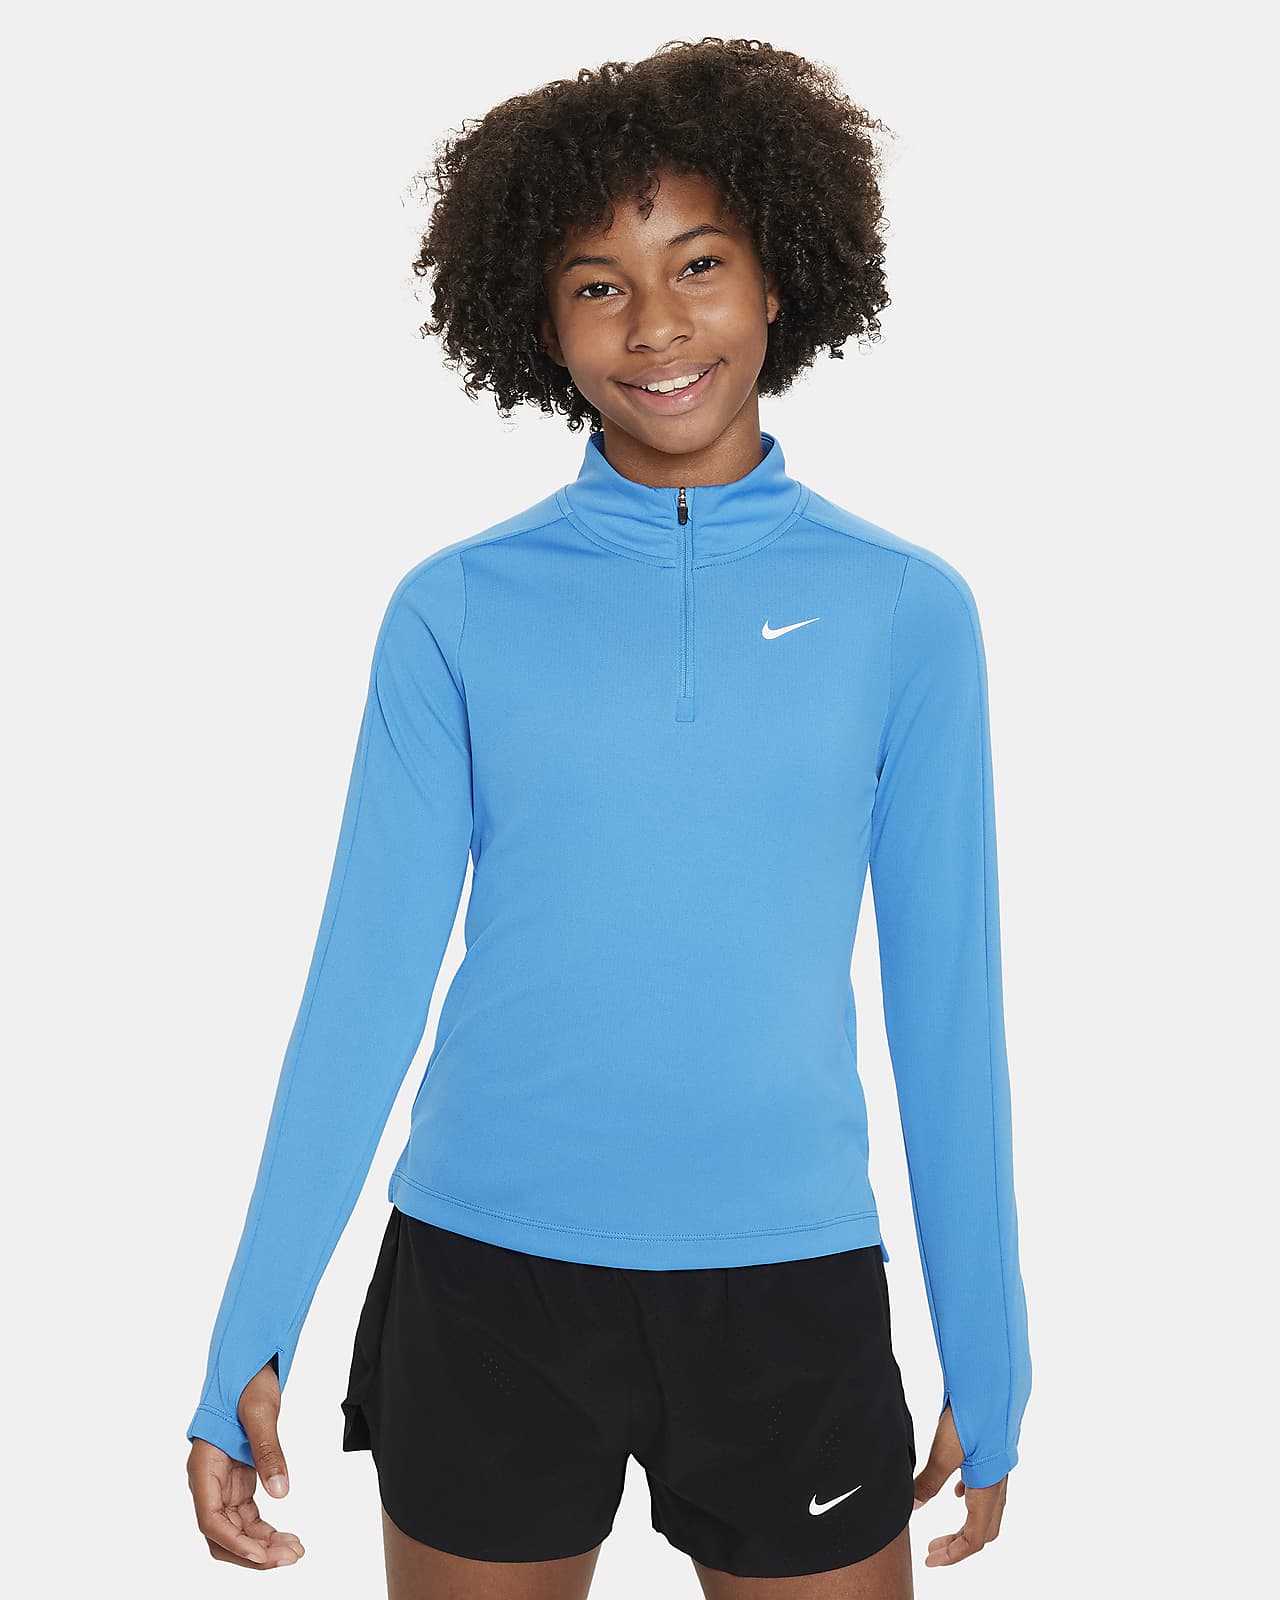 Μακρυμάνικη μπλούζα με φερμουάρ στο μισό μήκος Nike Dri-FIT για μεγάλα κορίτσια